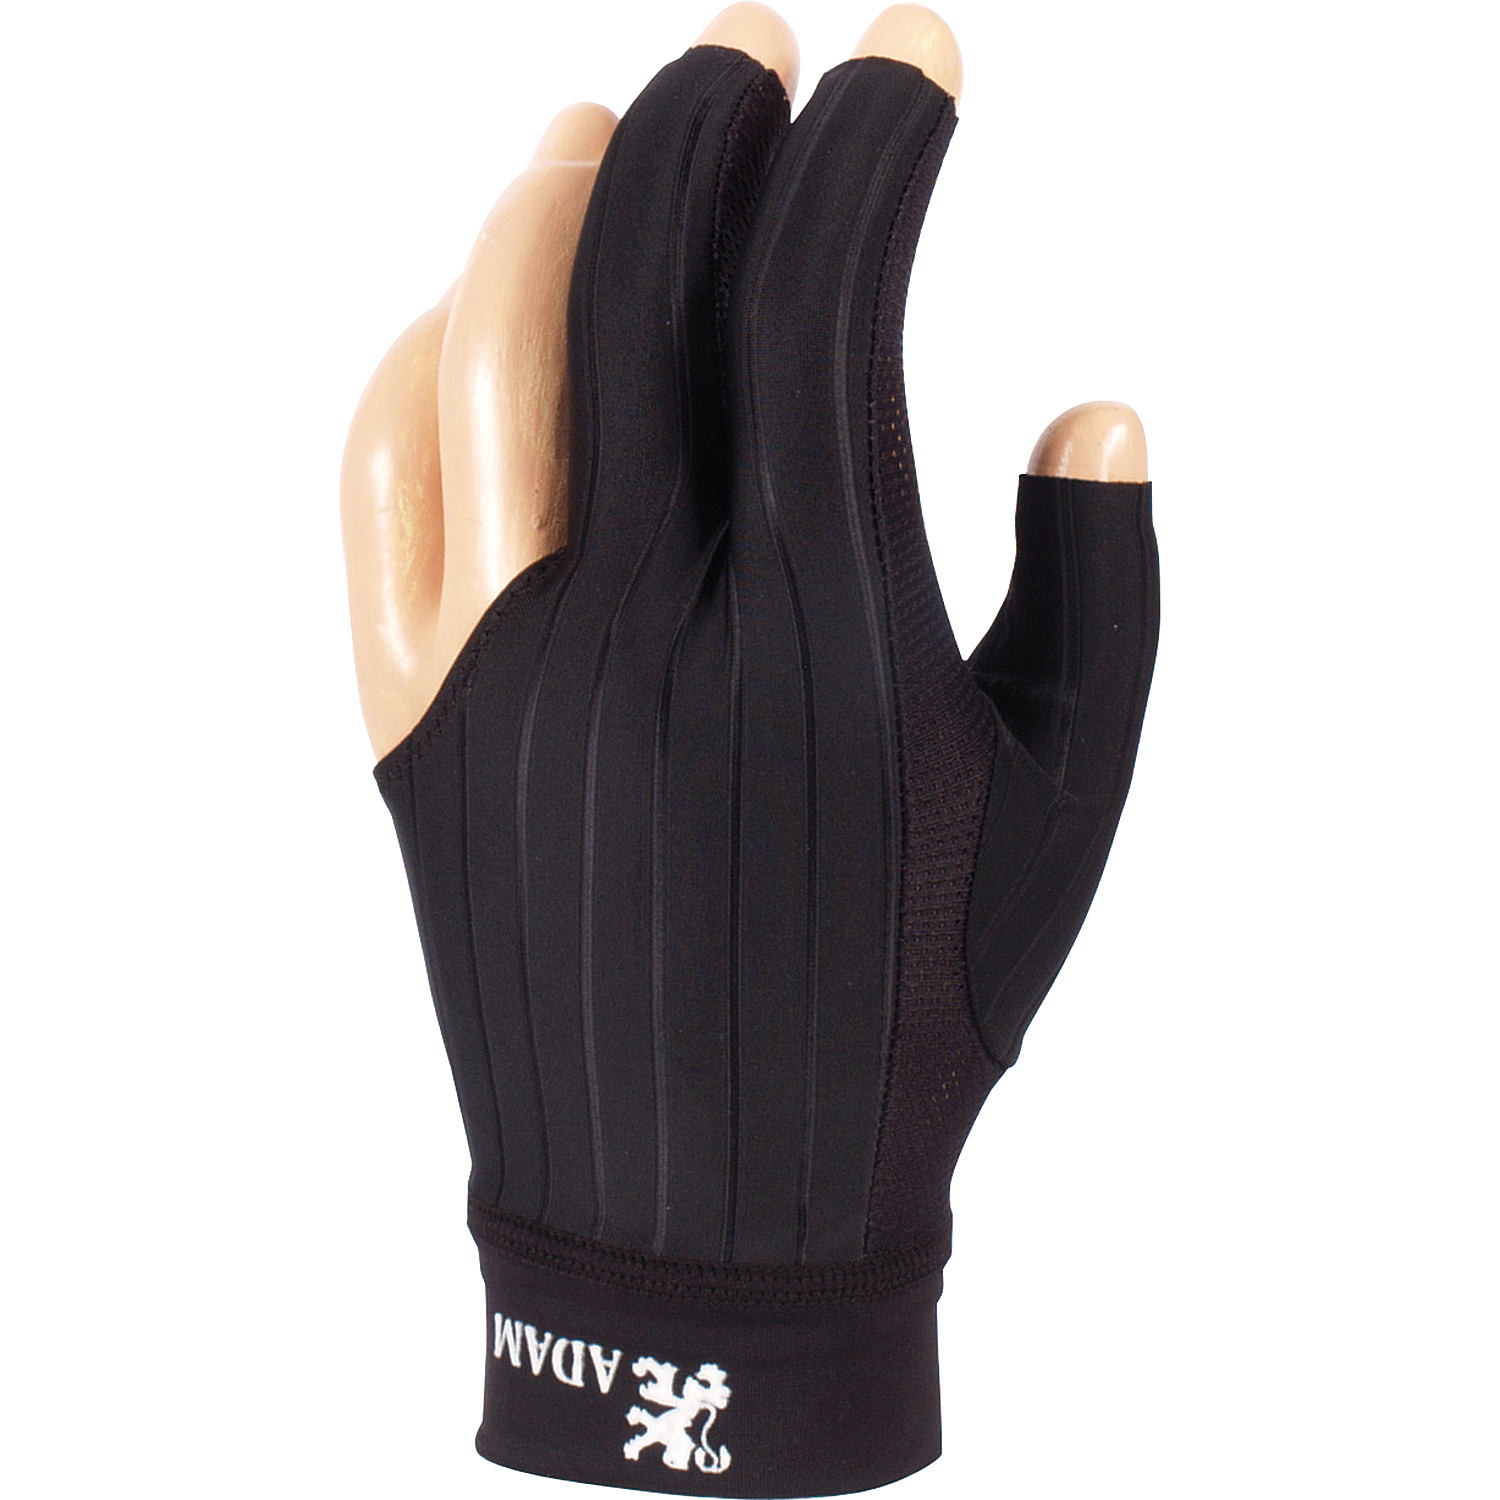 KA0280-AD: Biljart handschoen Adam Pro zwart #1